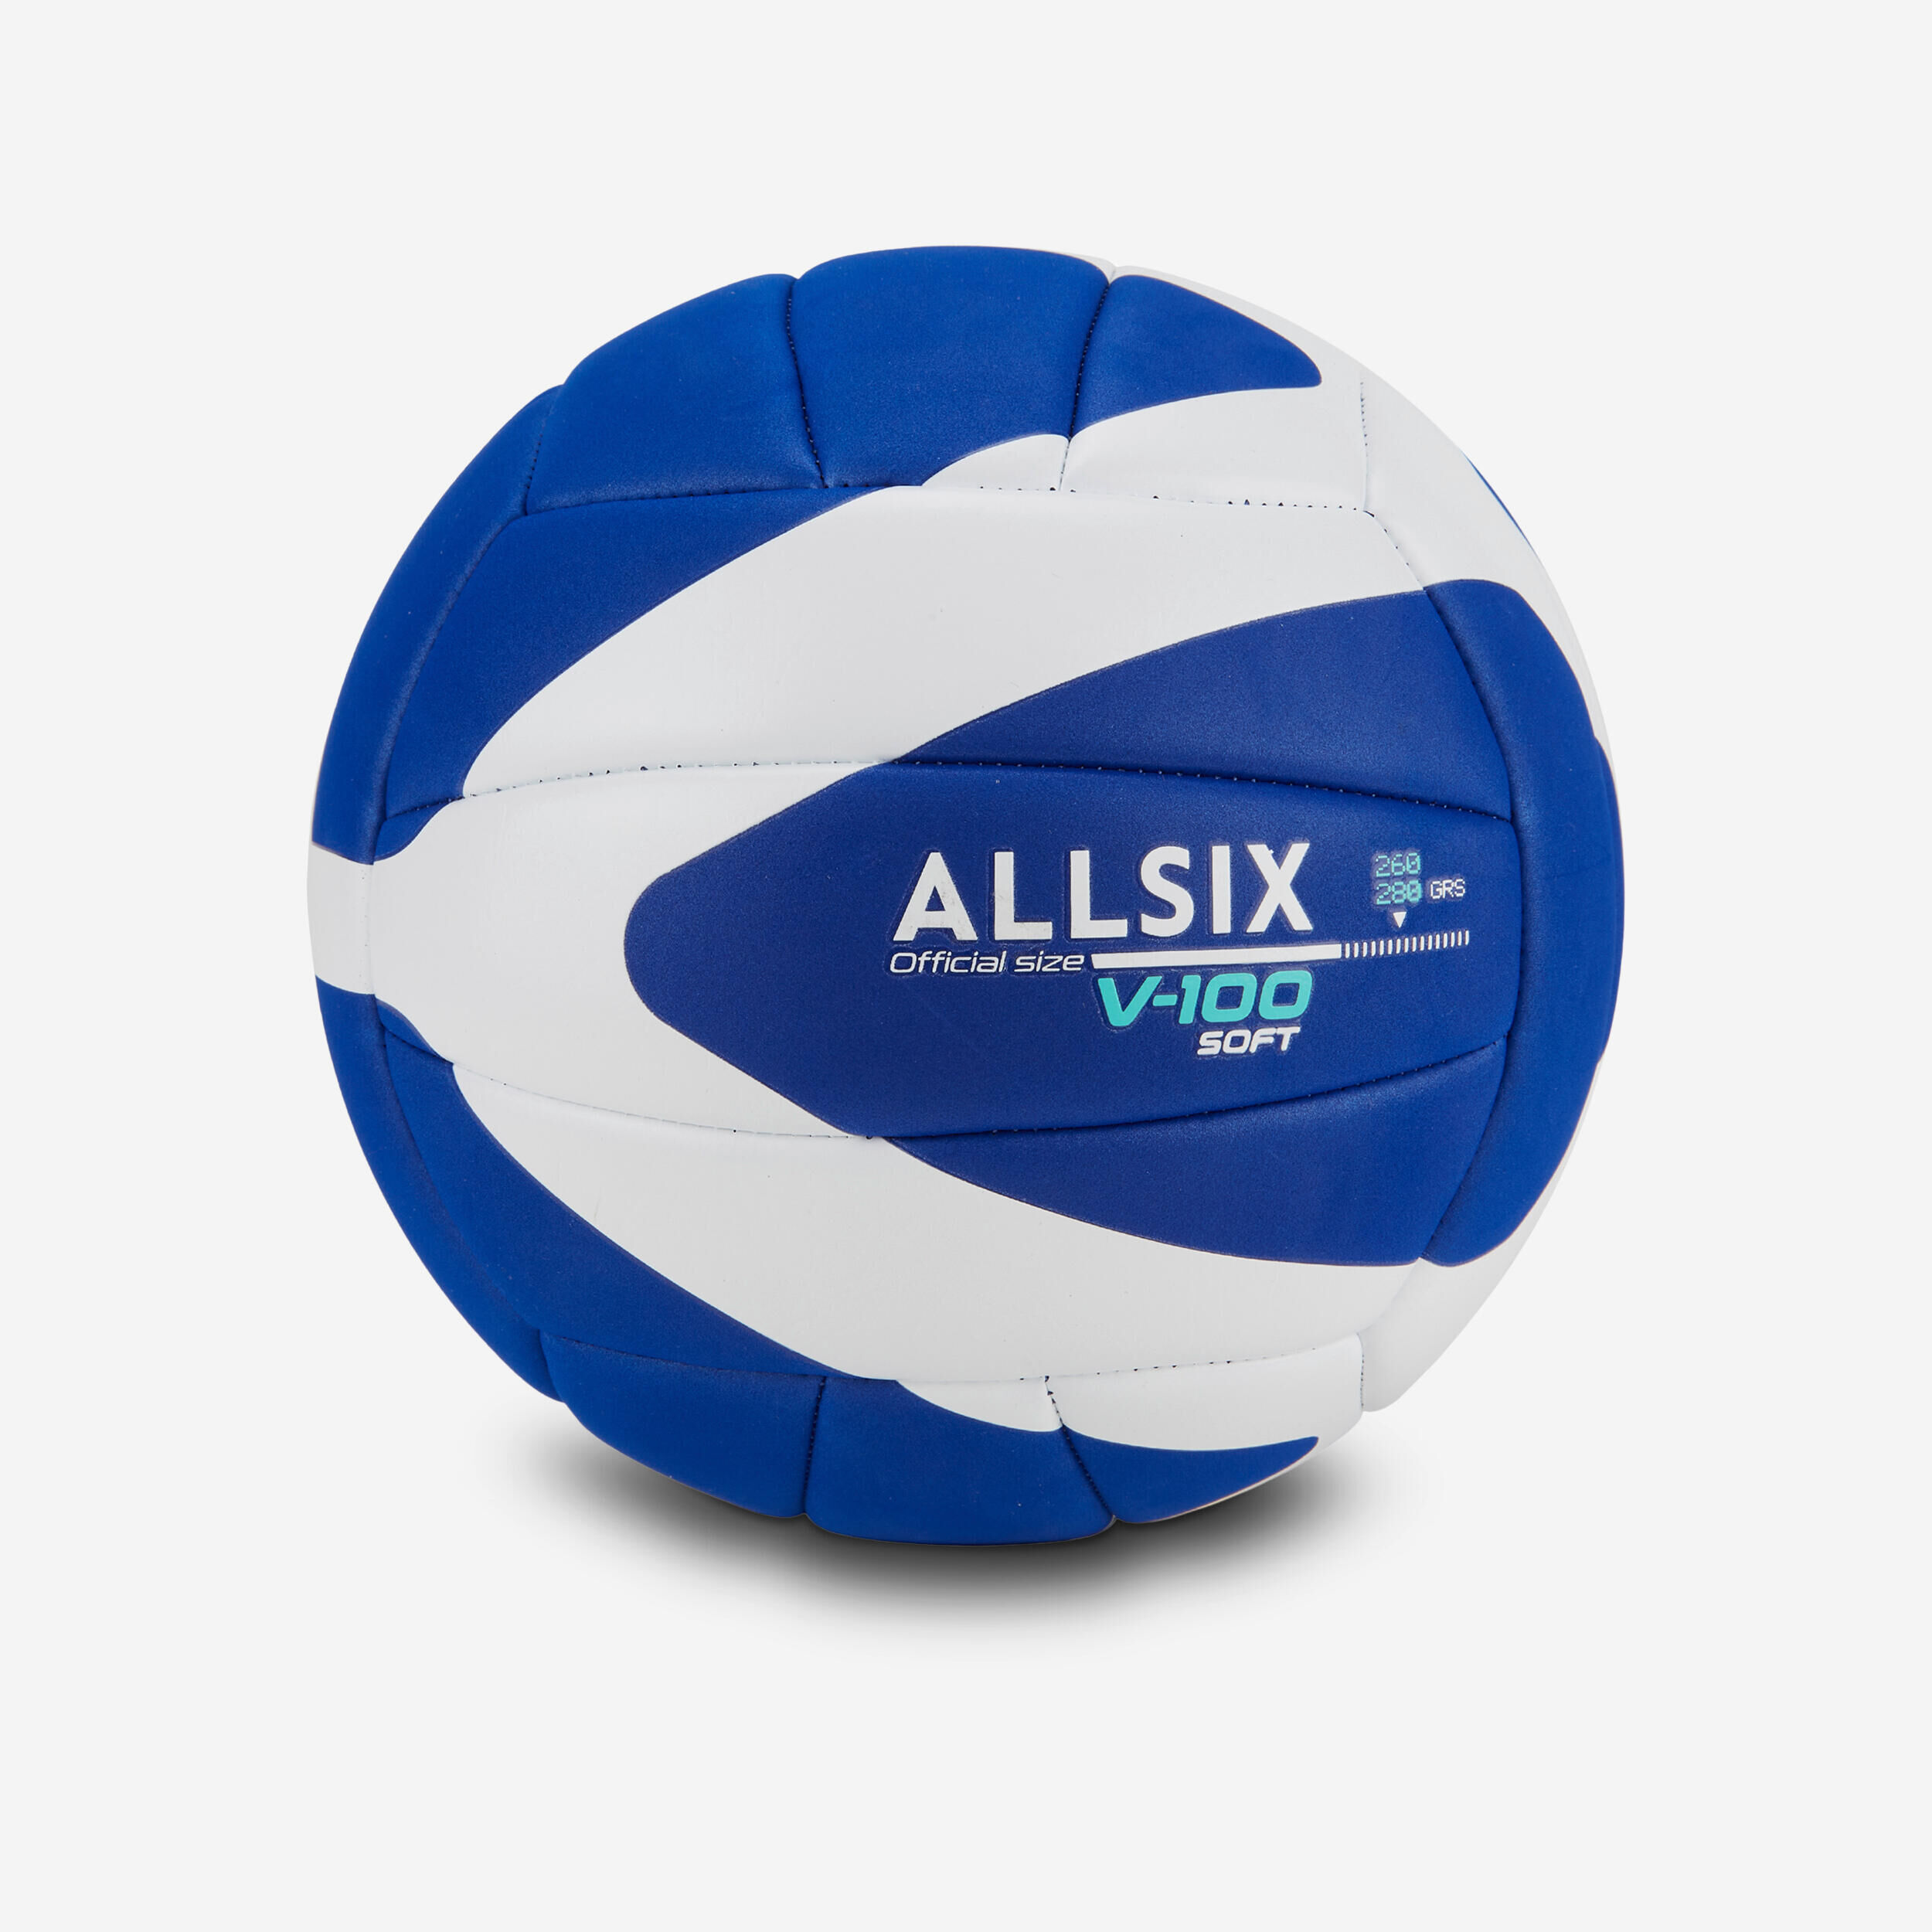 ALLSIX 260-280 g Volleyball for Over-15s V100 Soft - Blue/White